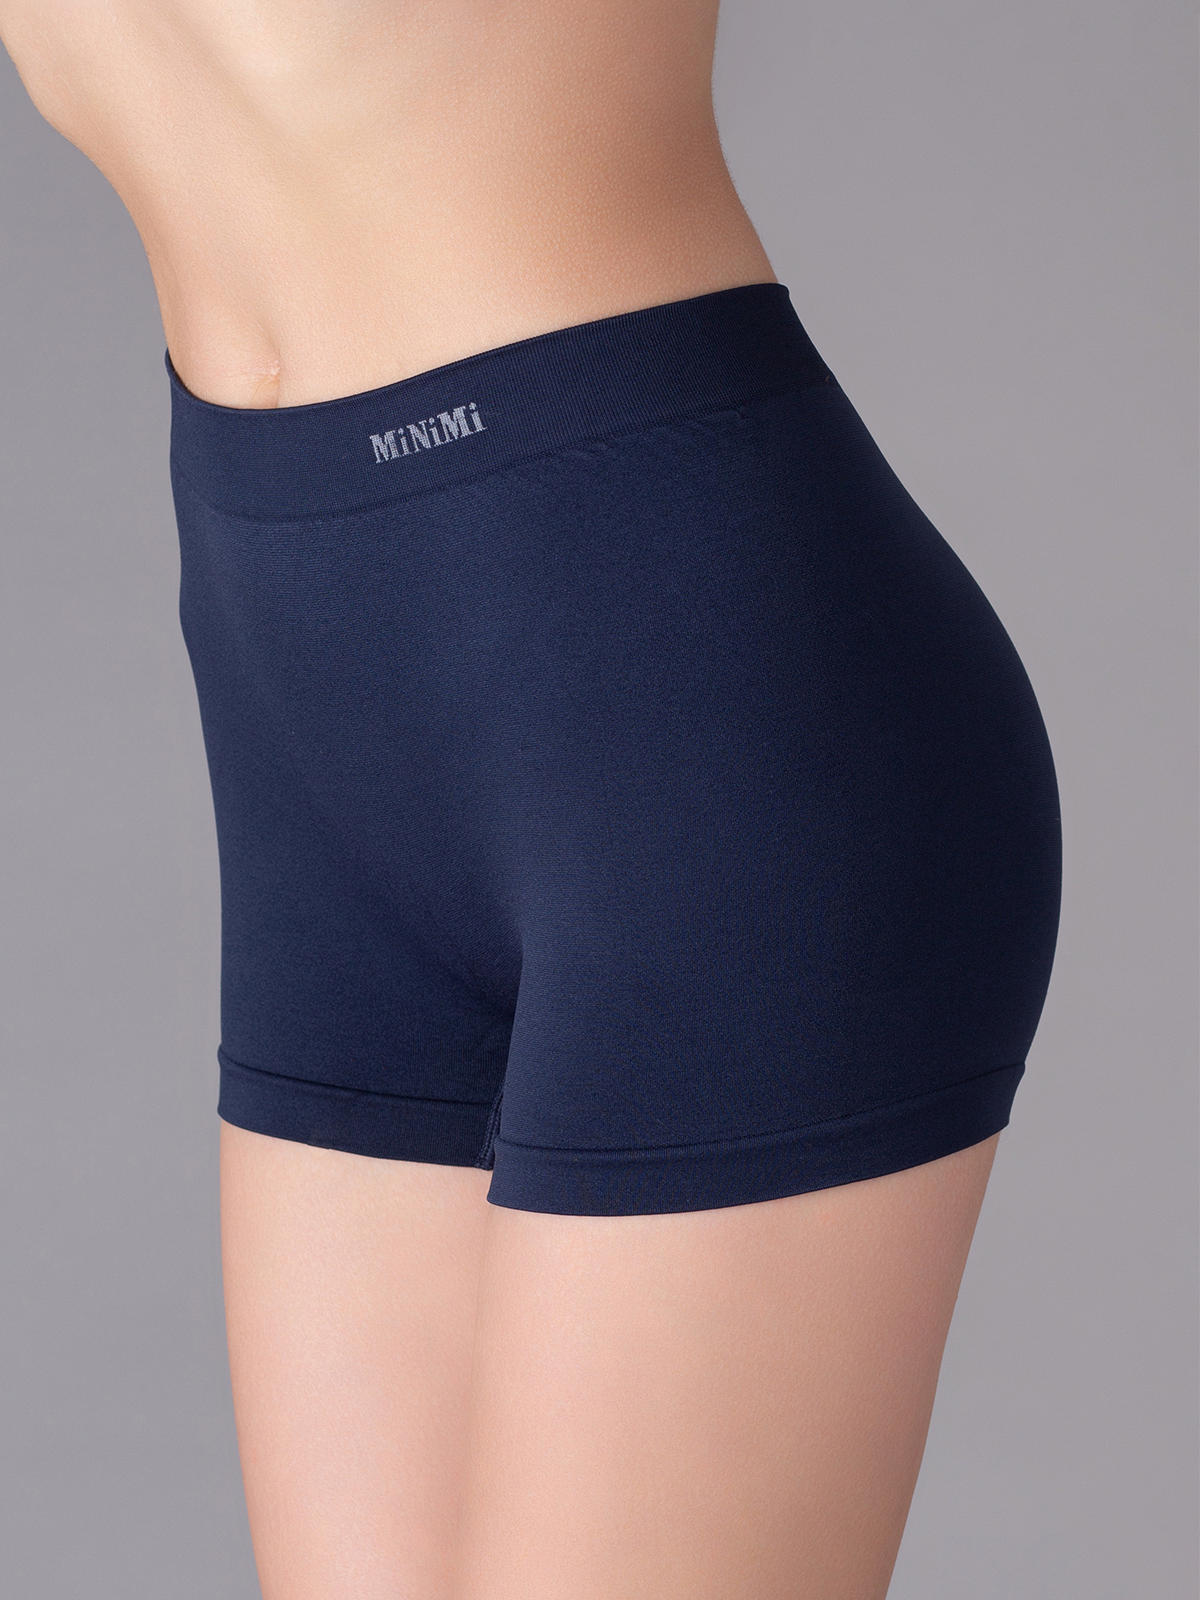 Трусы женские Minimi MA 270 shorts синие L/XL